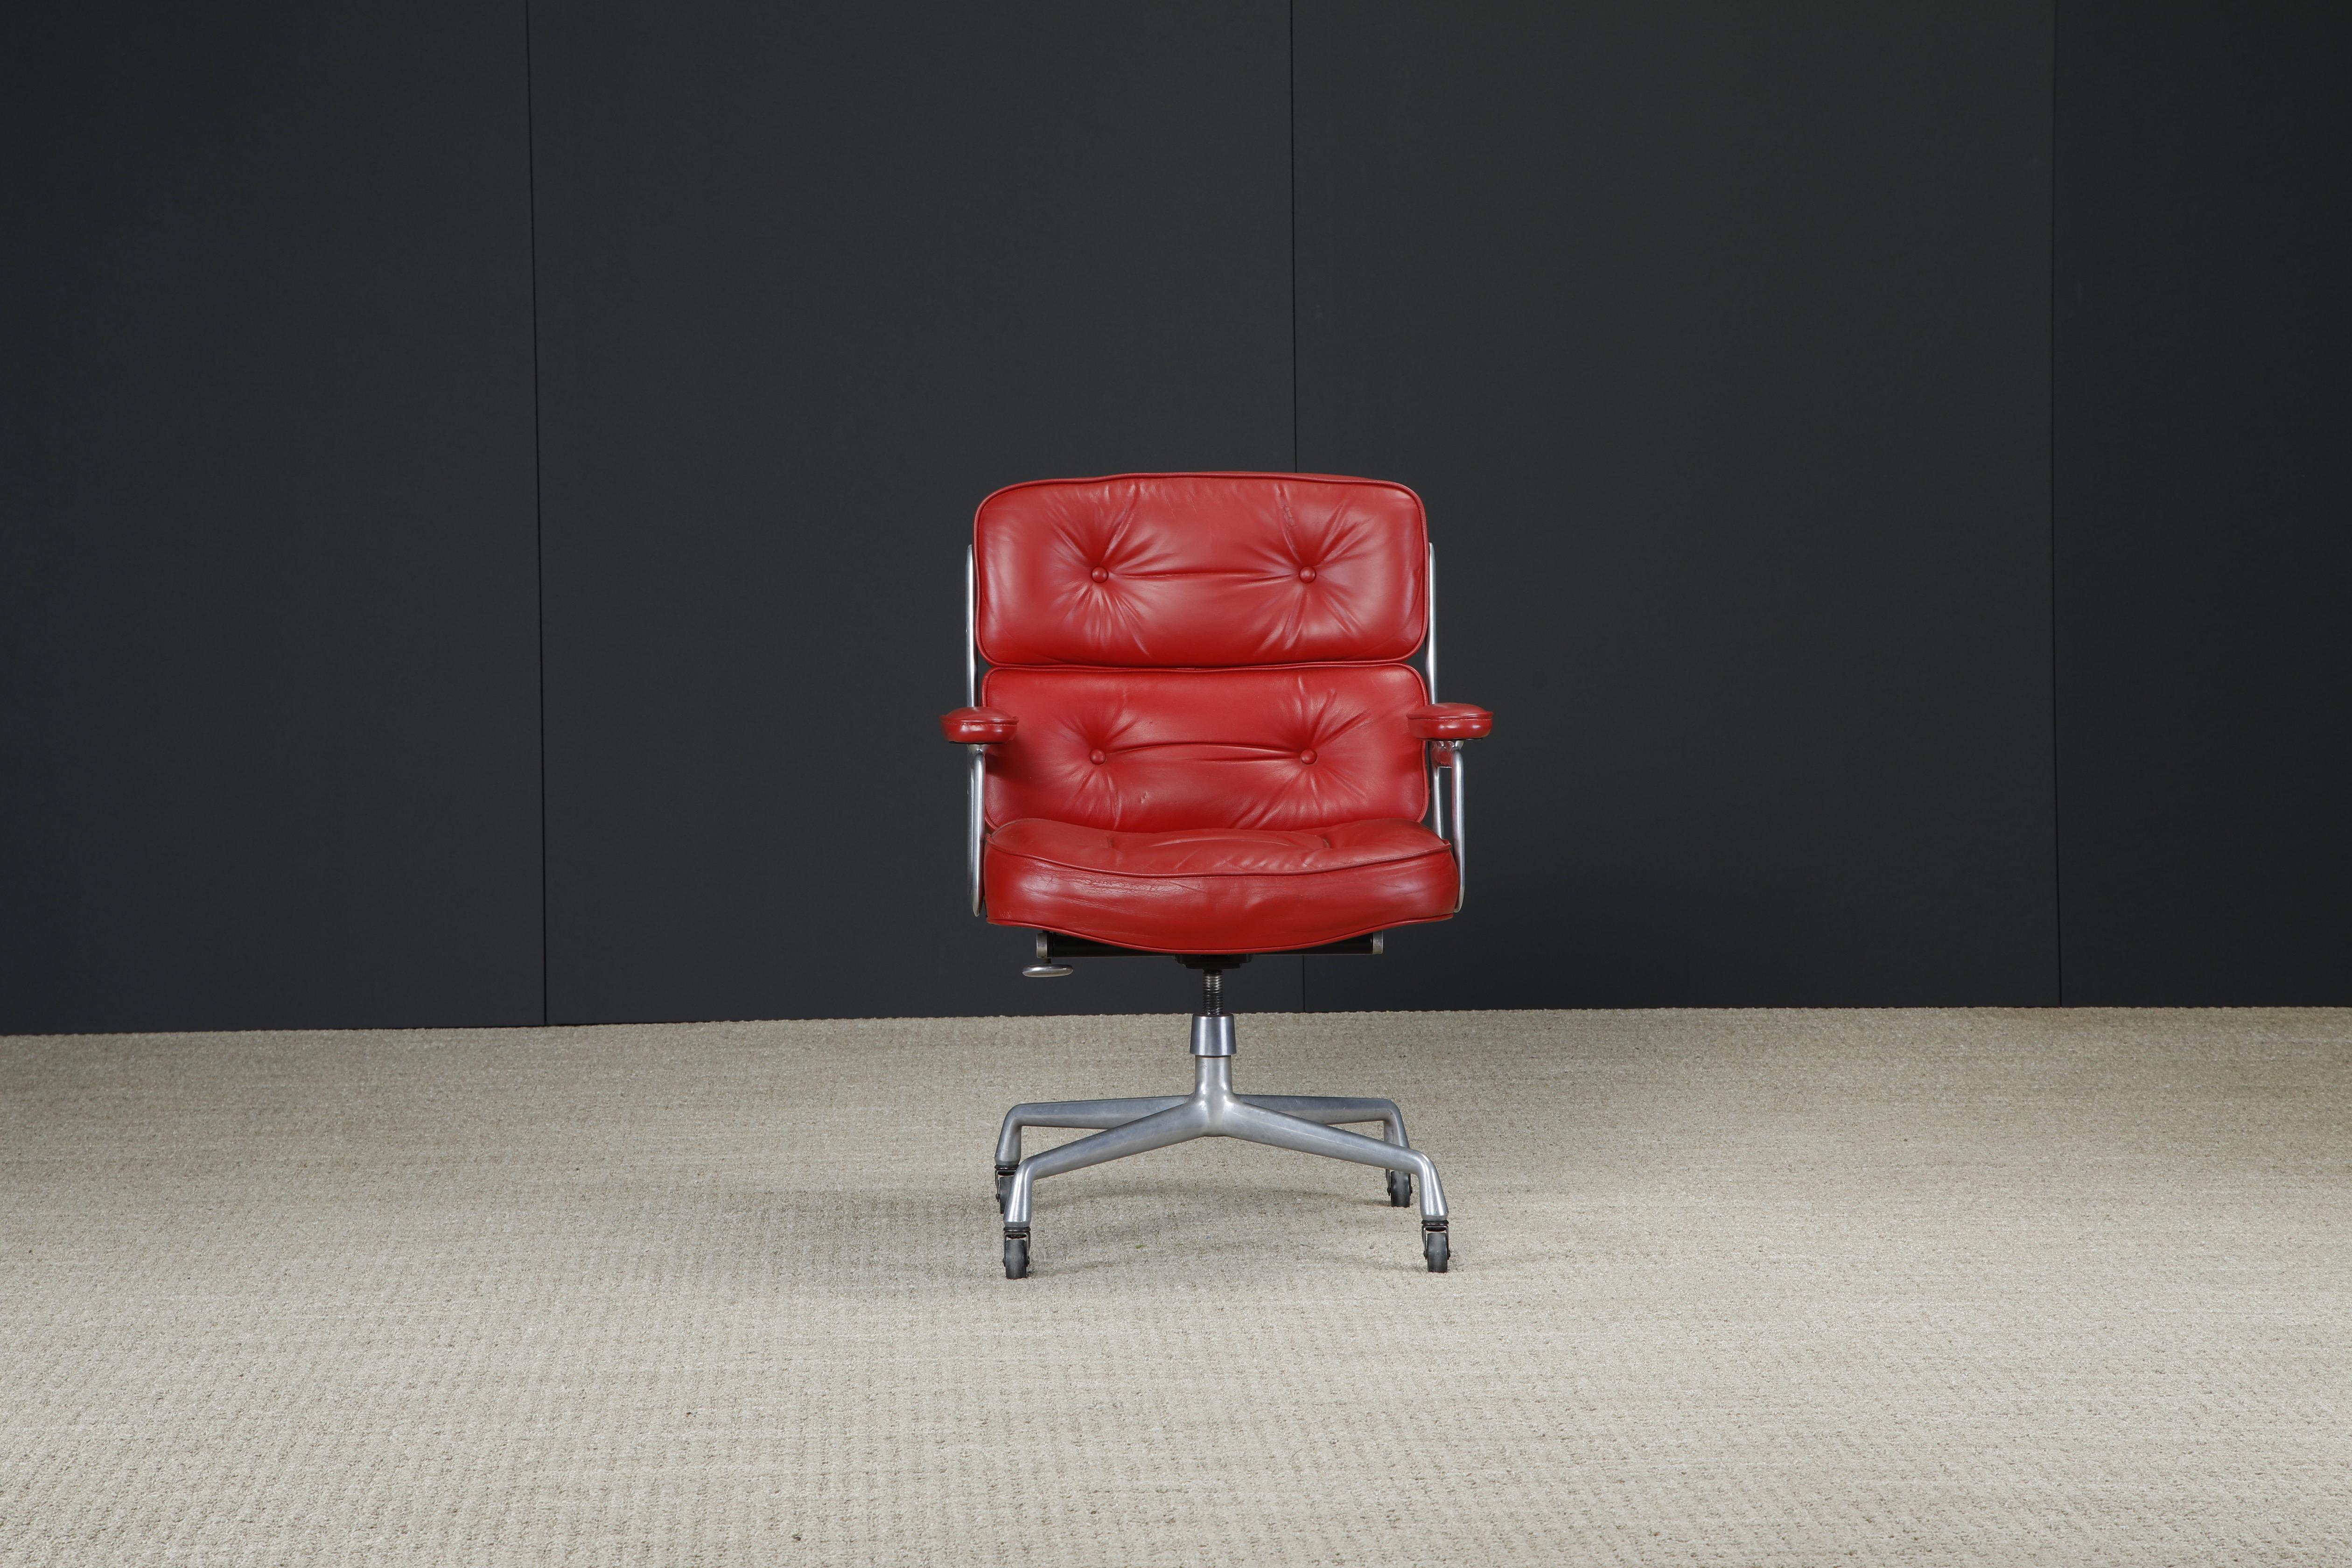 Diese seltene Farbvariante in schönem roten Leder ist der Time Life Executive Chair (Modell ES-104) von Charles und Ray Eames für Herman Miller, der 1960 ursprünglich für das Time Life-Gebäude entworfen wurde - daher der Name des Stuhls. 

Signiert